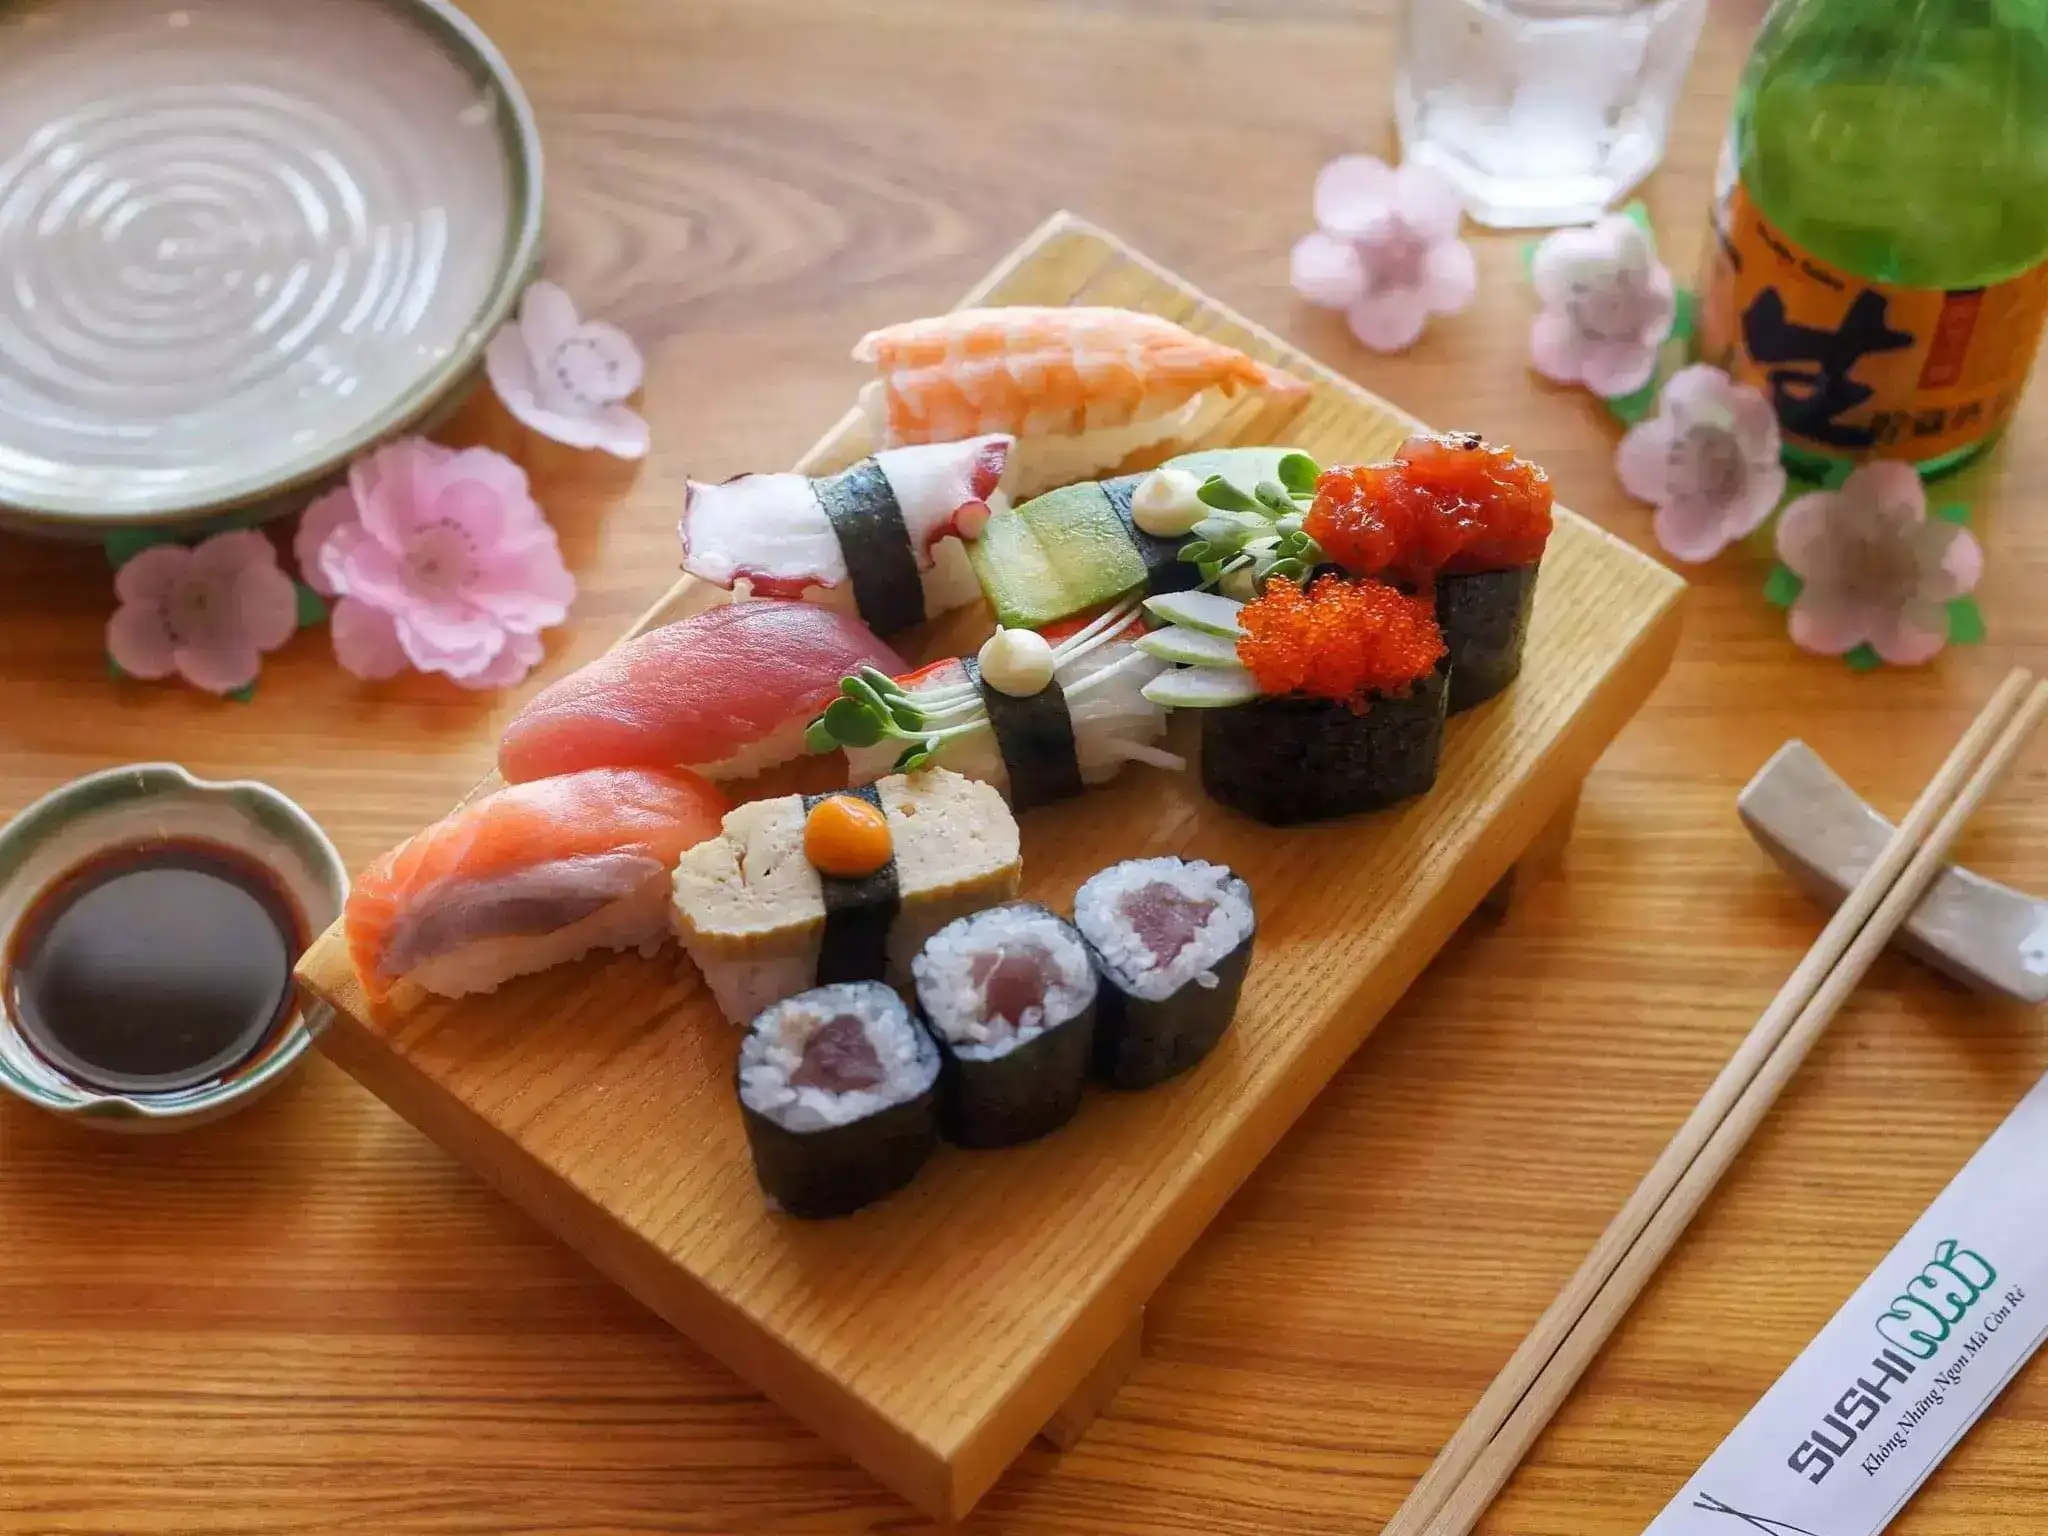 đồ ăn sushi nhí 